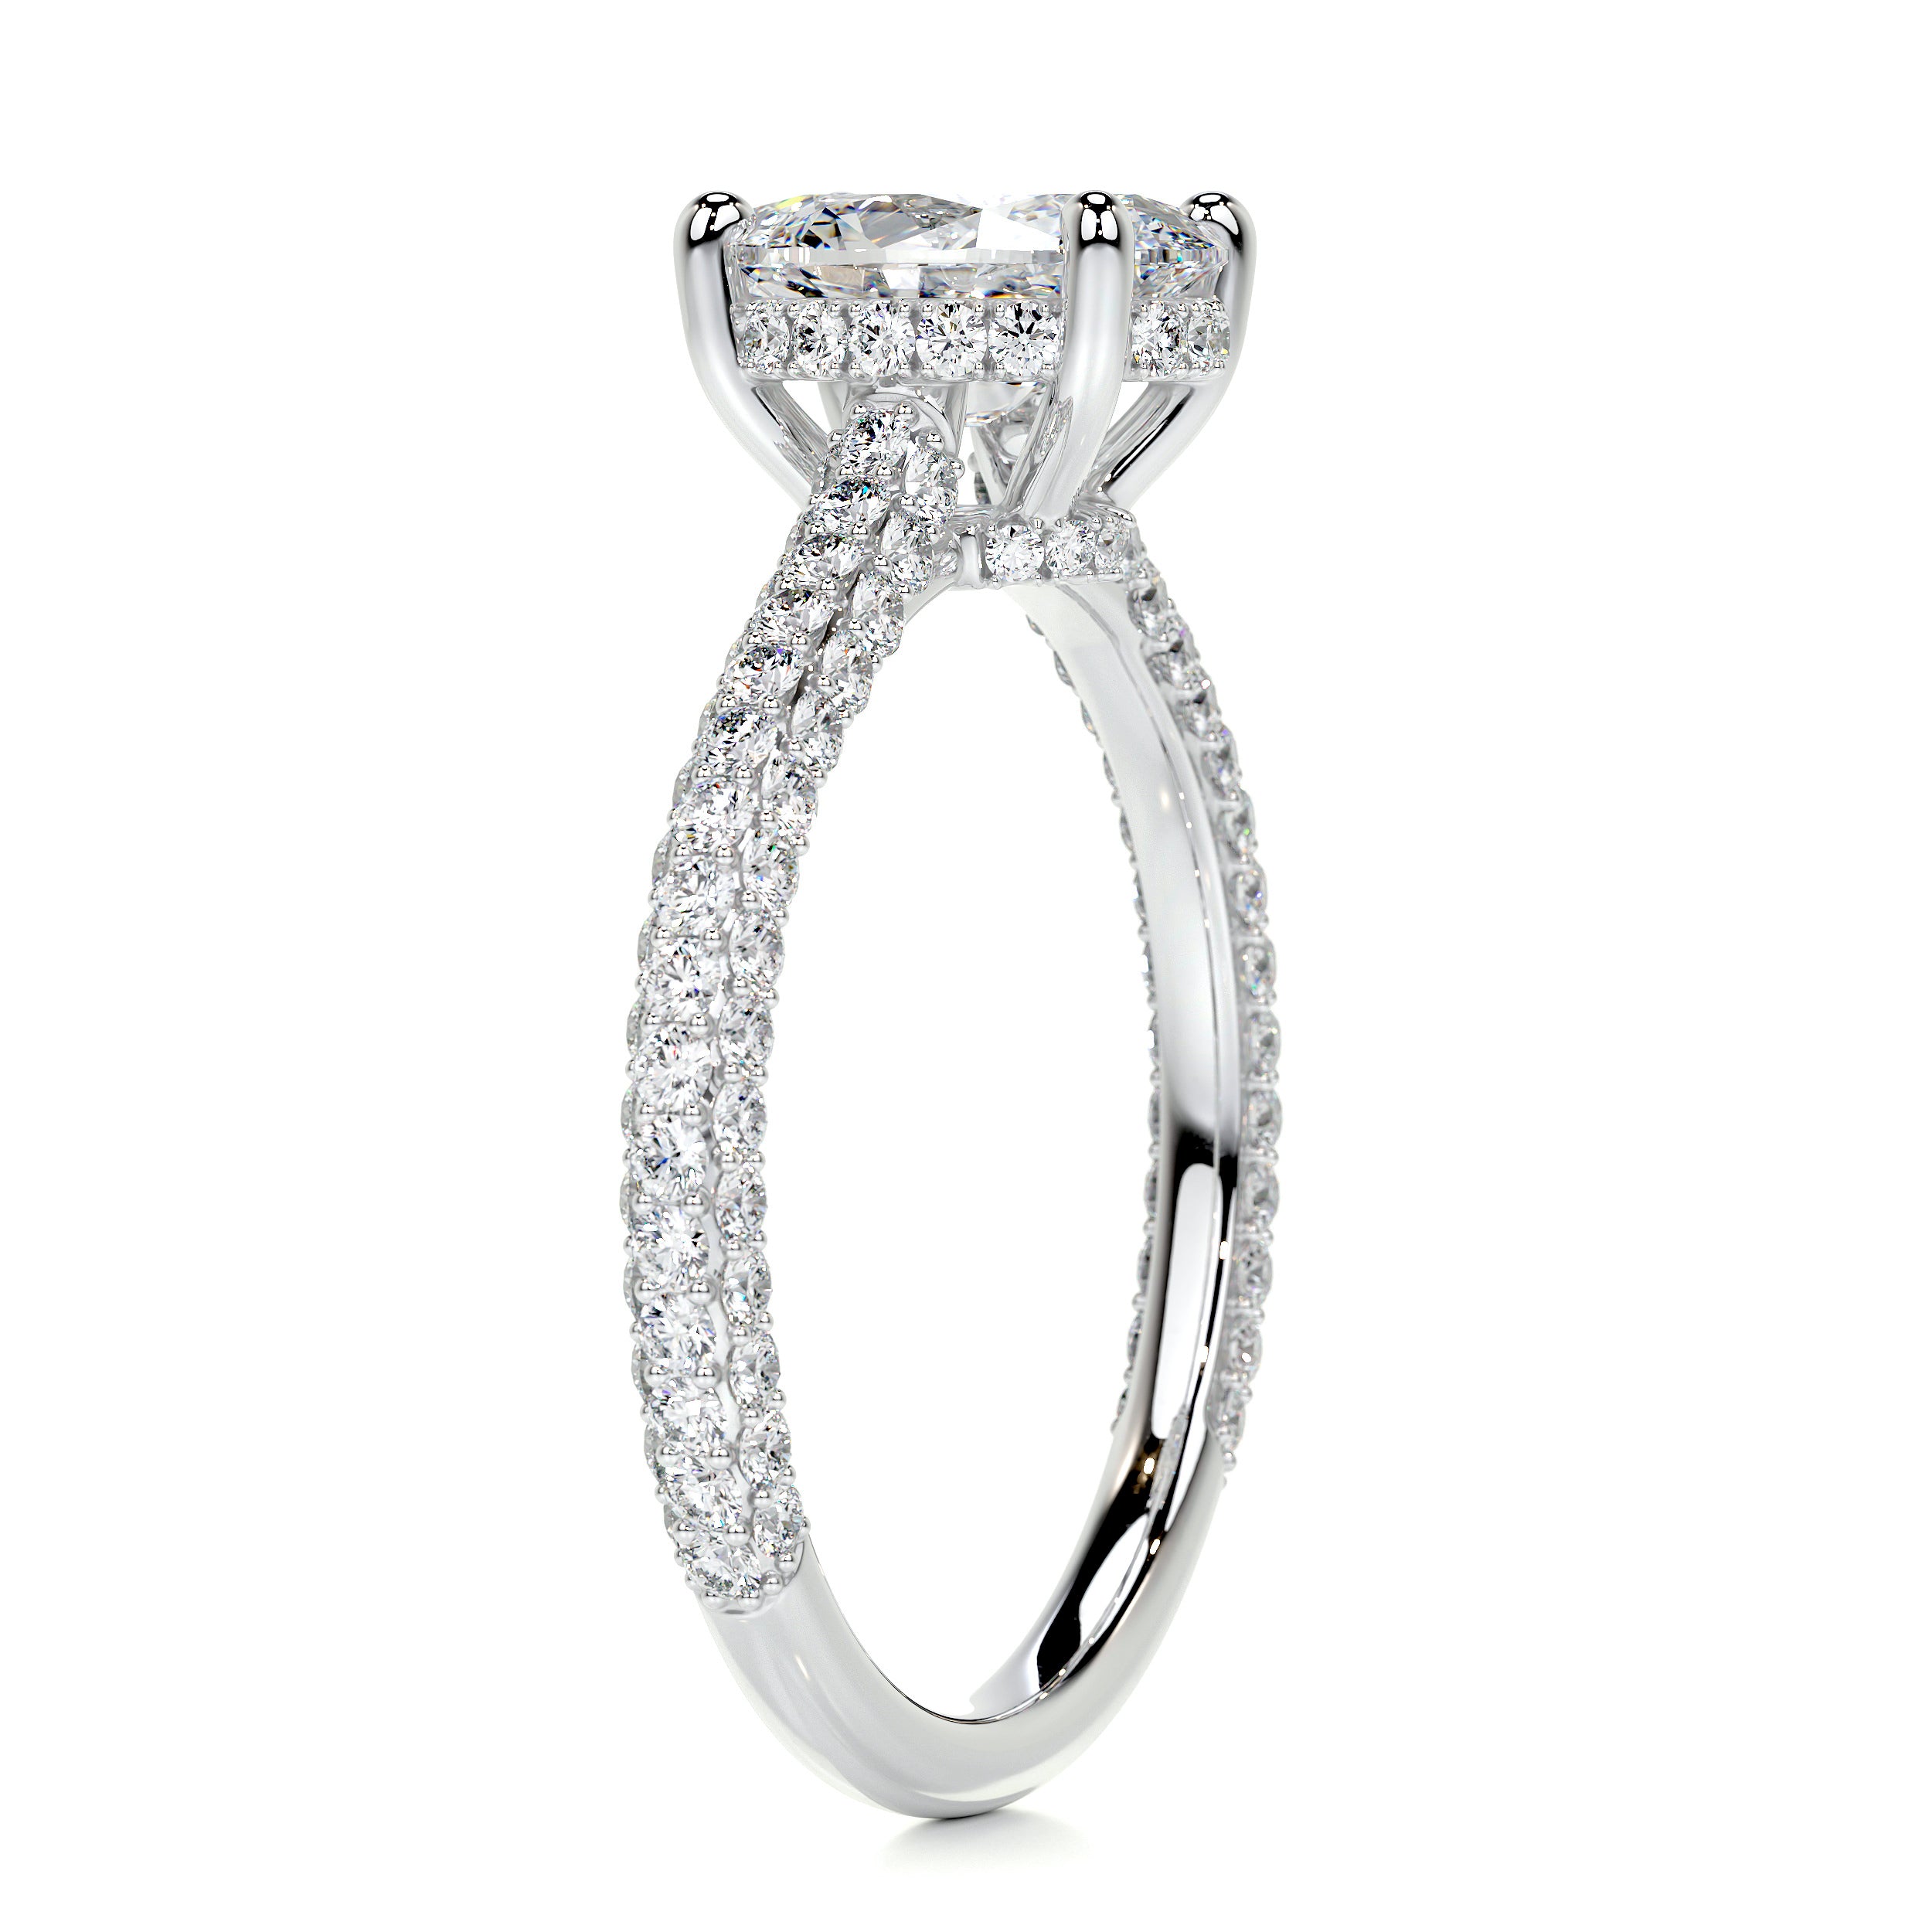 Rebecca Diamond Engagement Ring   (2.5 Carat) -Platinum